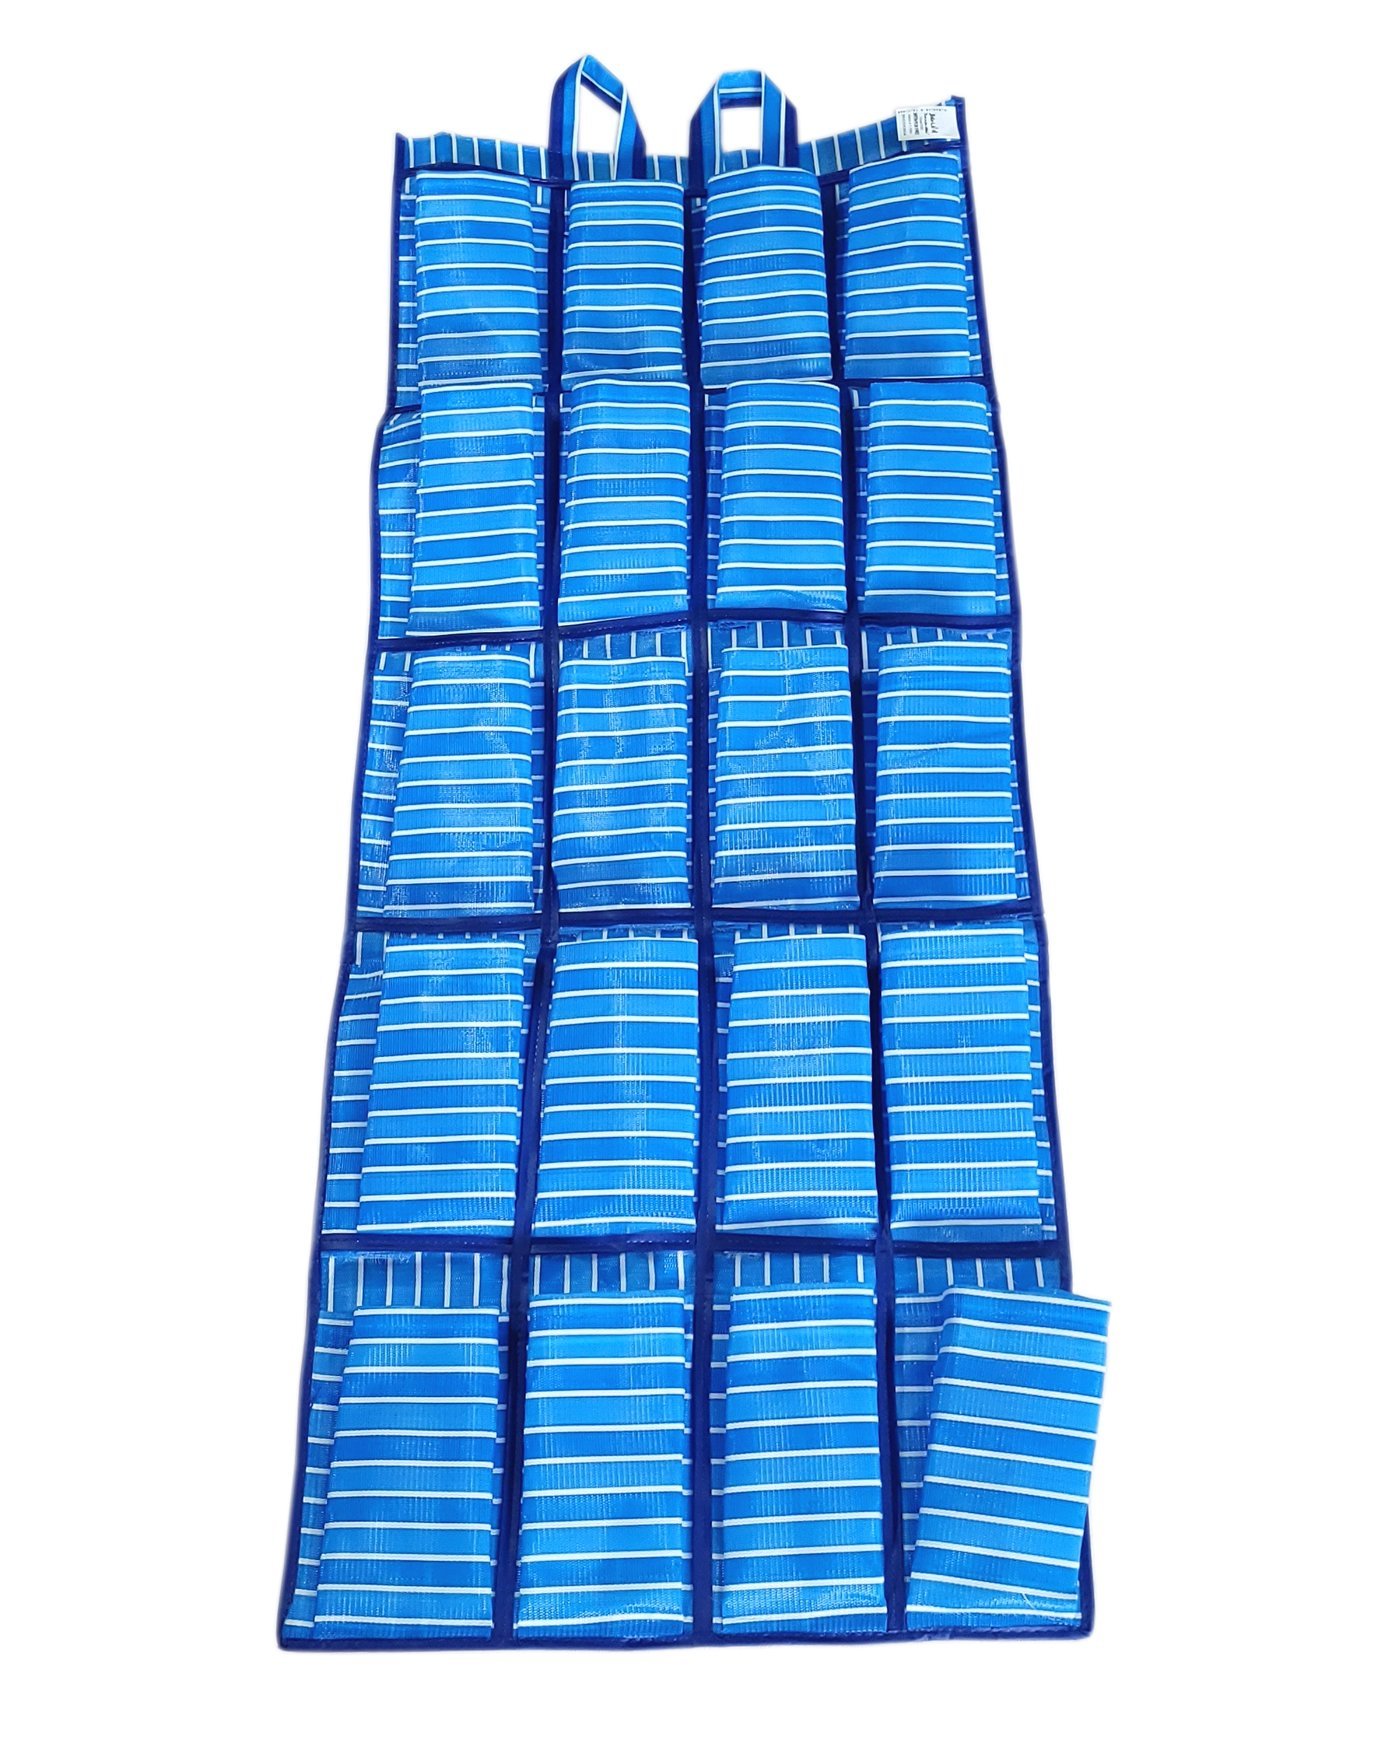 Sapateira de Nylon 10 pares - Panami:Azul Listrado